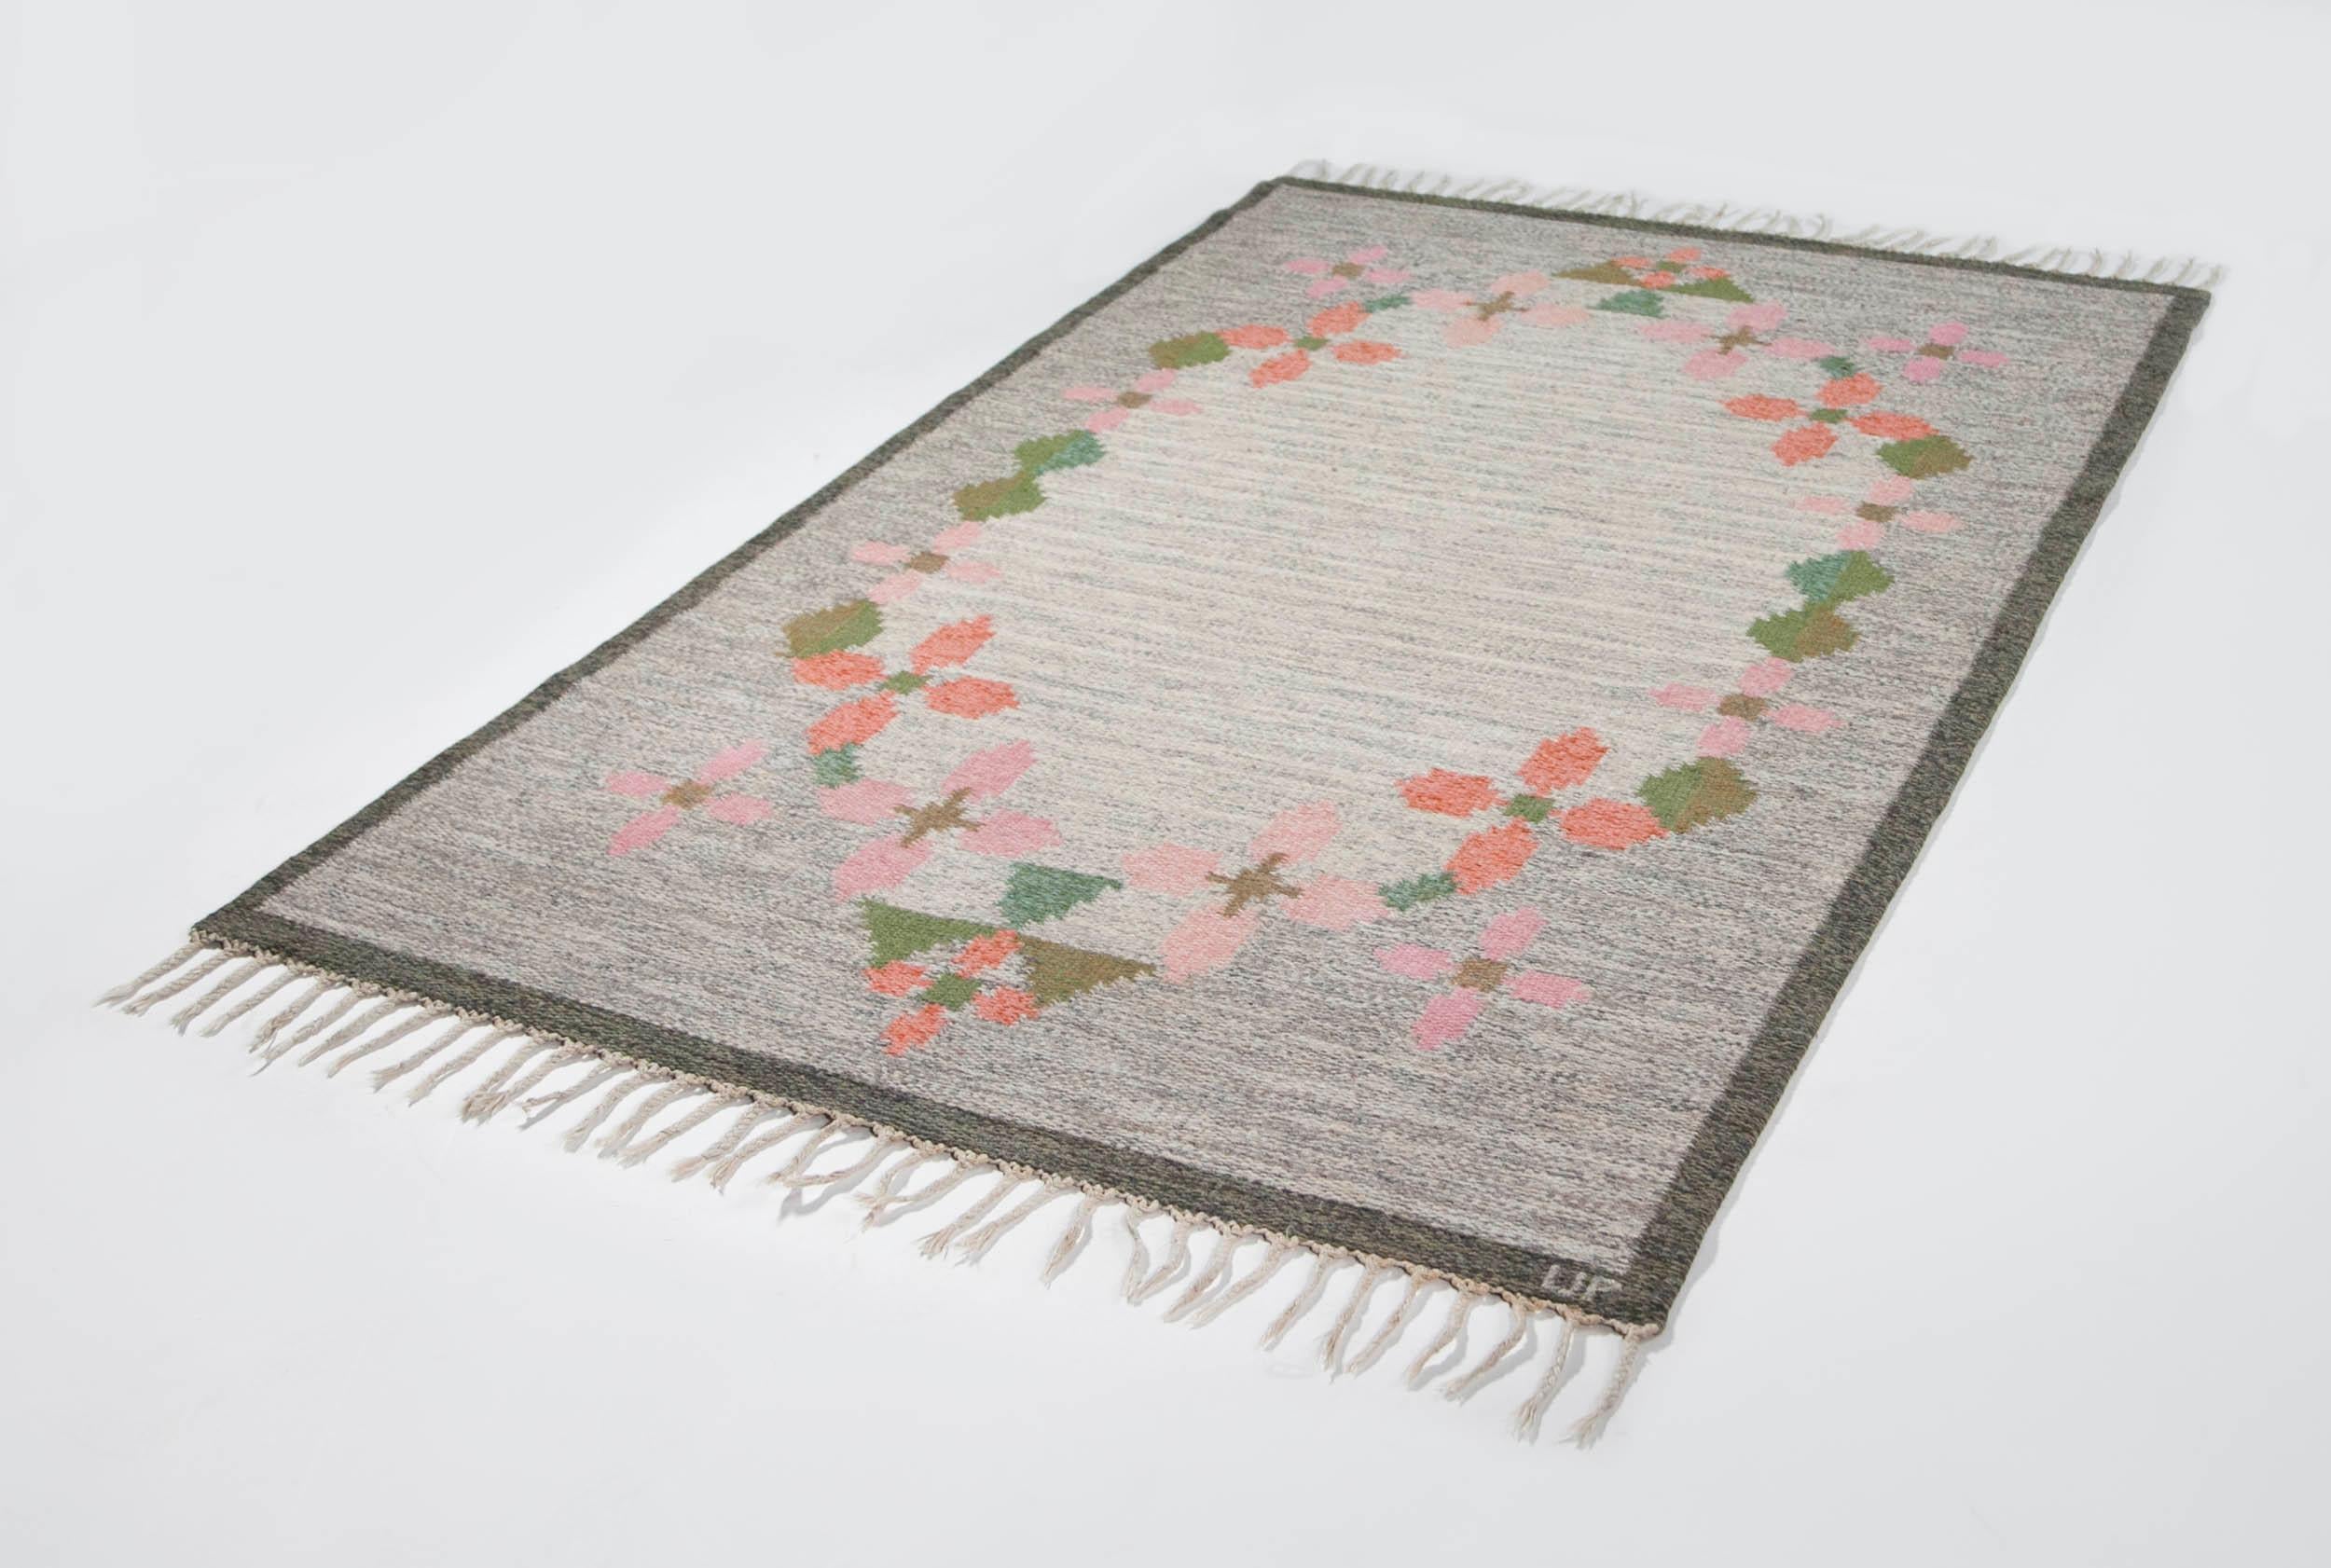 Ulla Parkdah Swedish Flat-Weave Rug, Signed UP, Sweden, 1960s For Sale 7